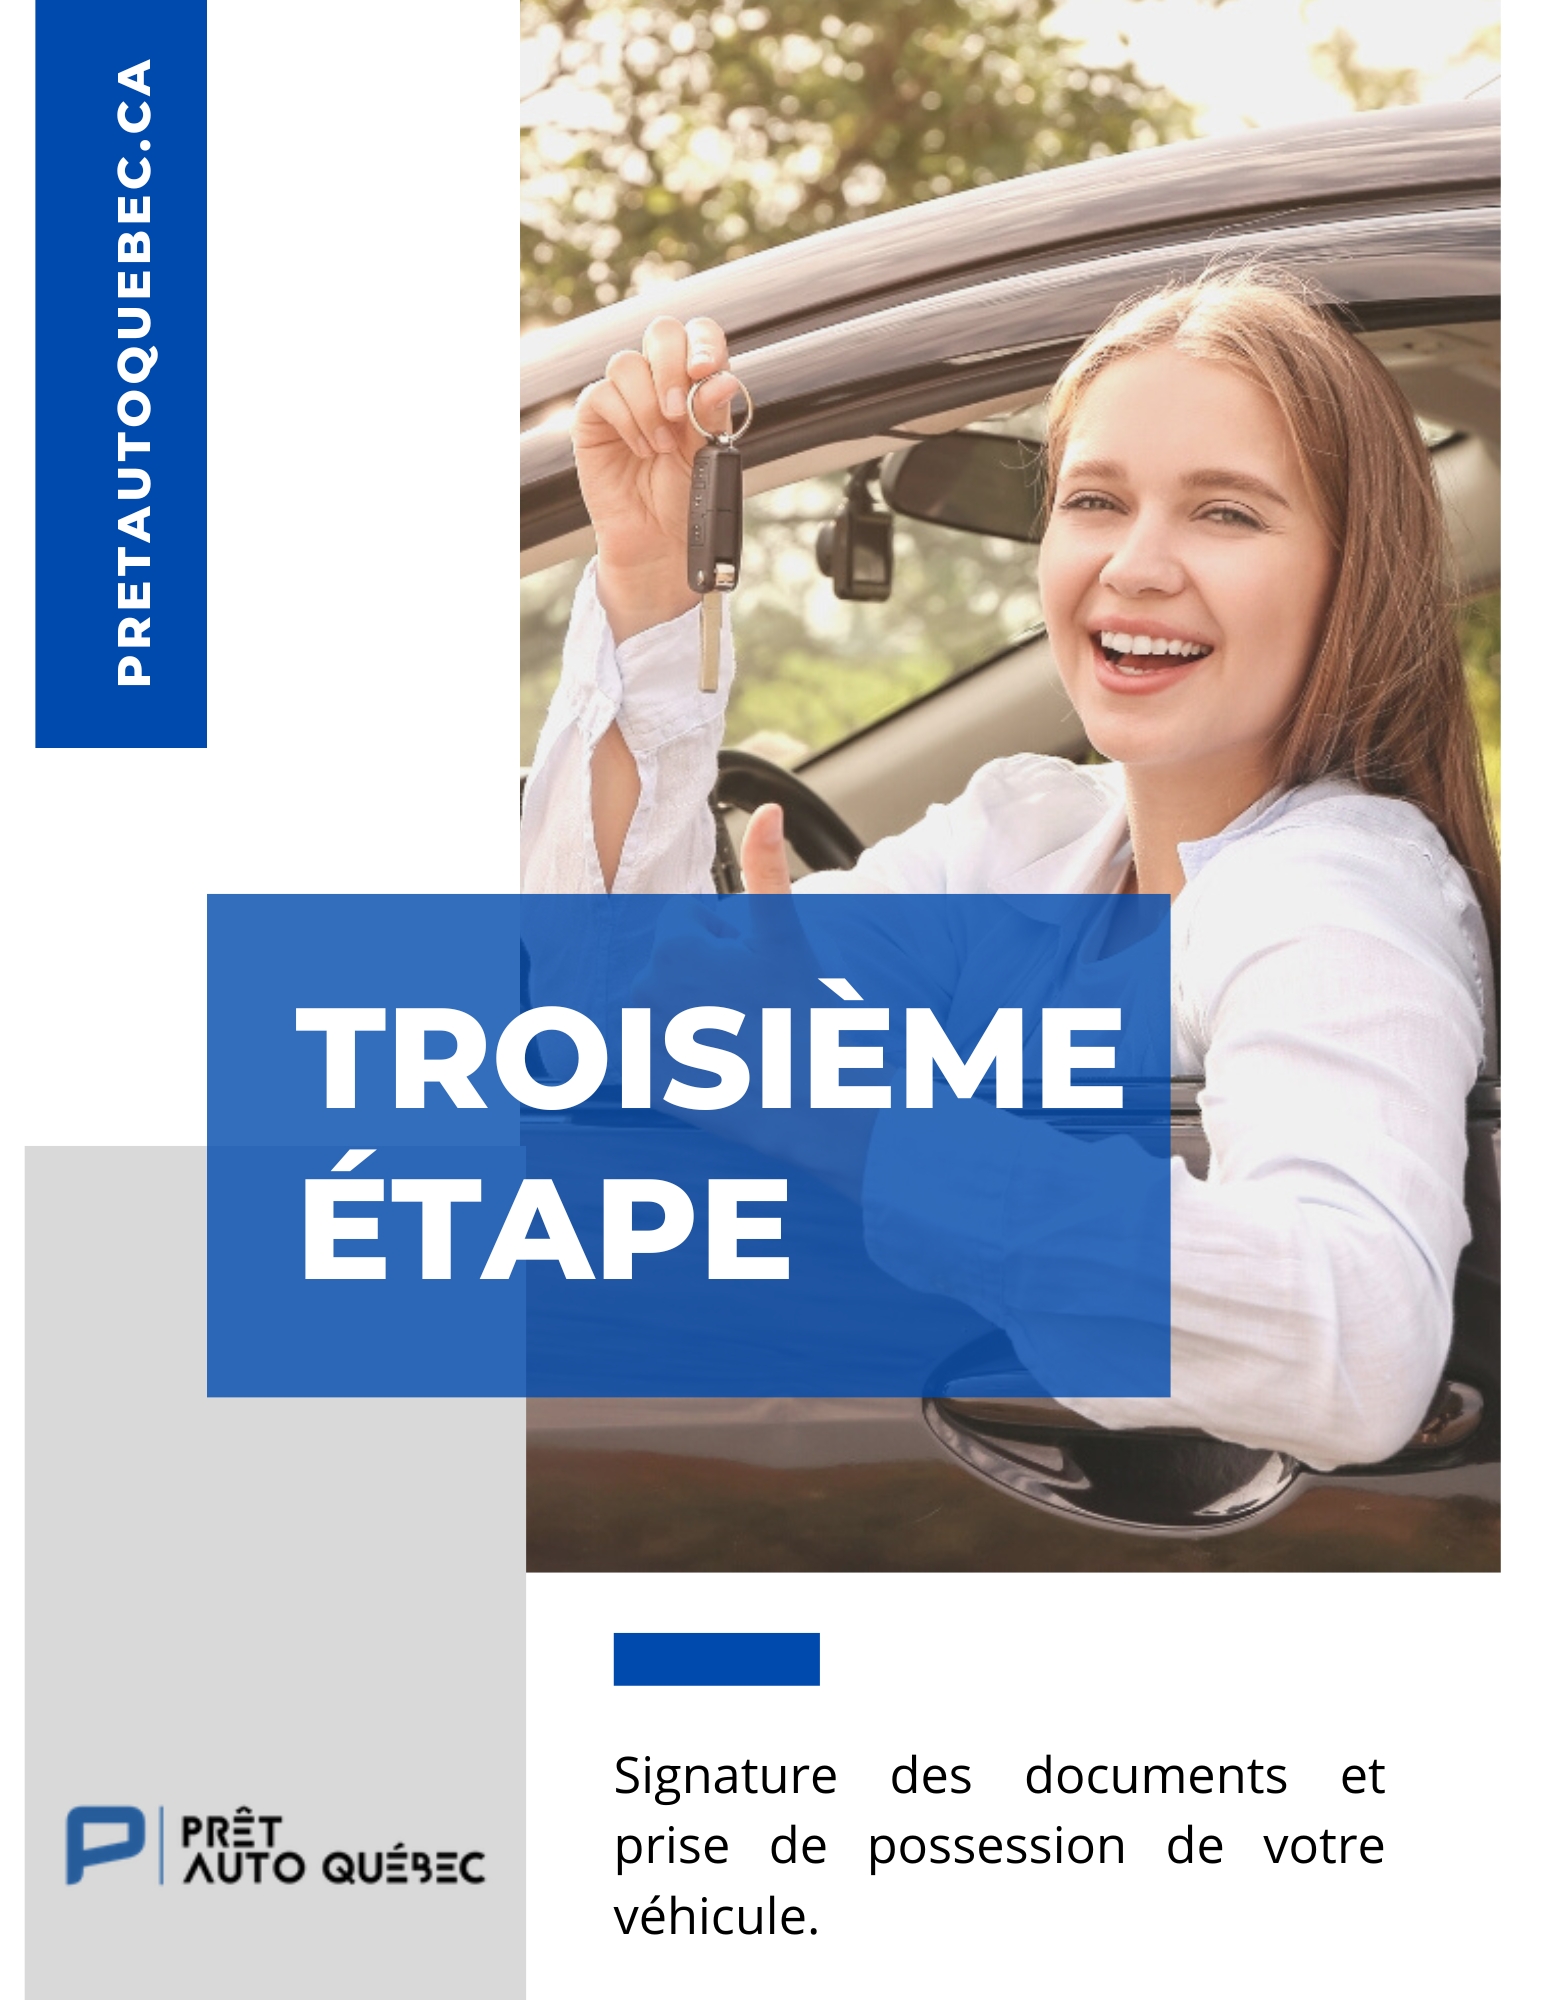 Prêt Auto Québec